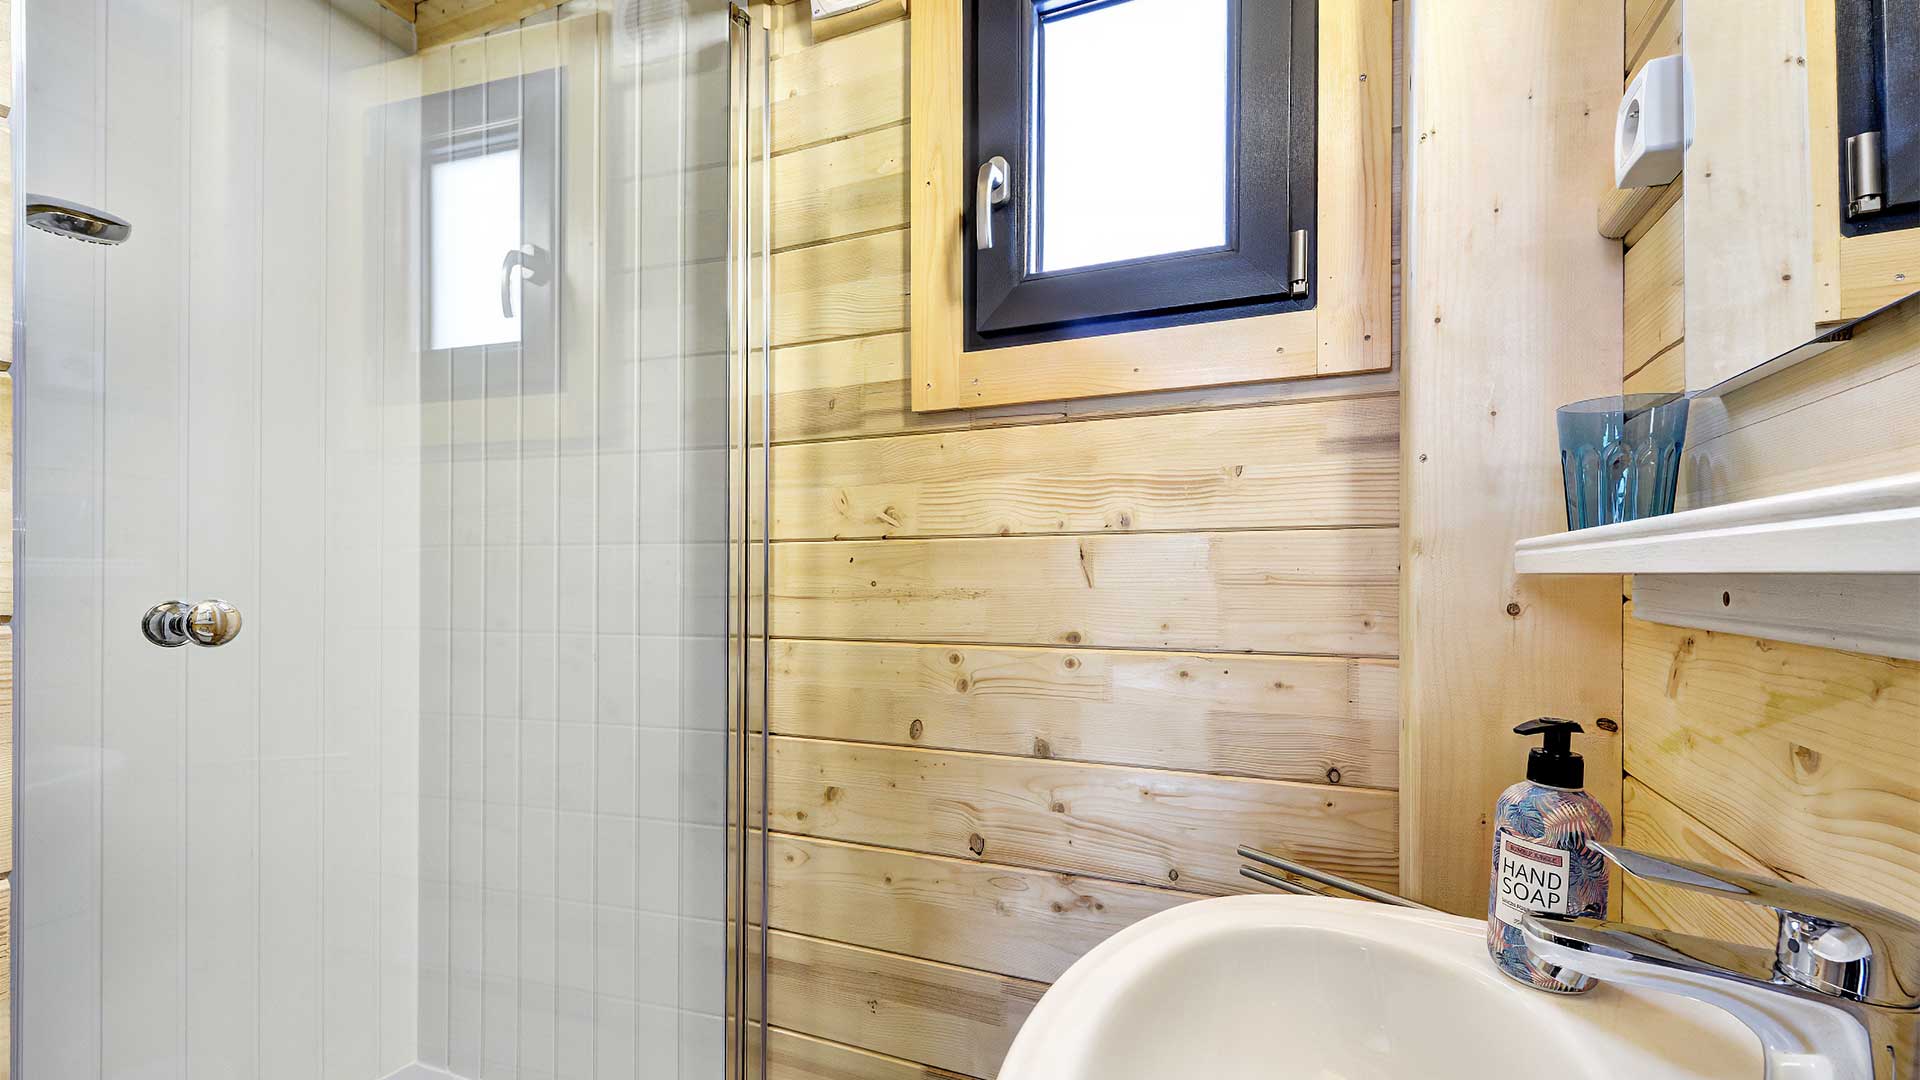 Chalet Duplex 6 personnes : Salle de bain - Location de chalet à Briançon